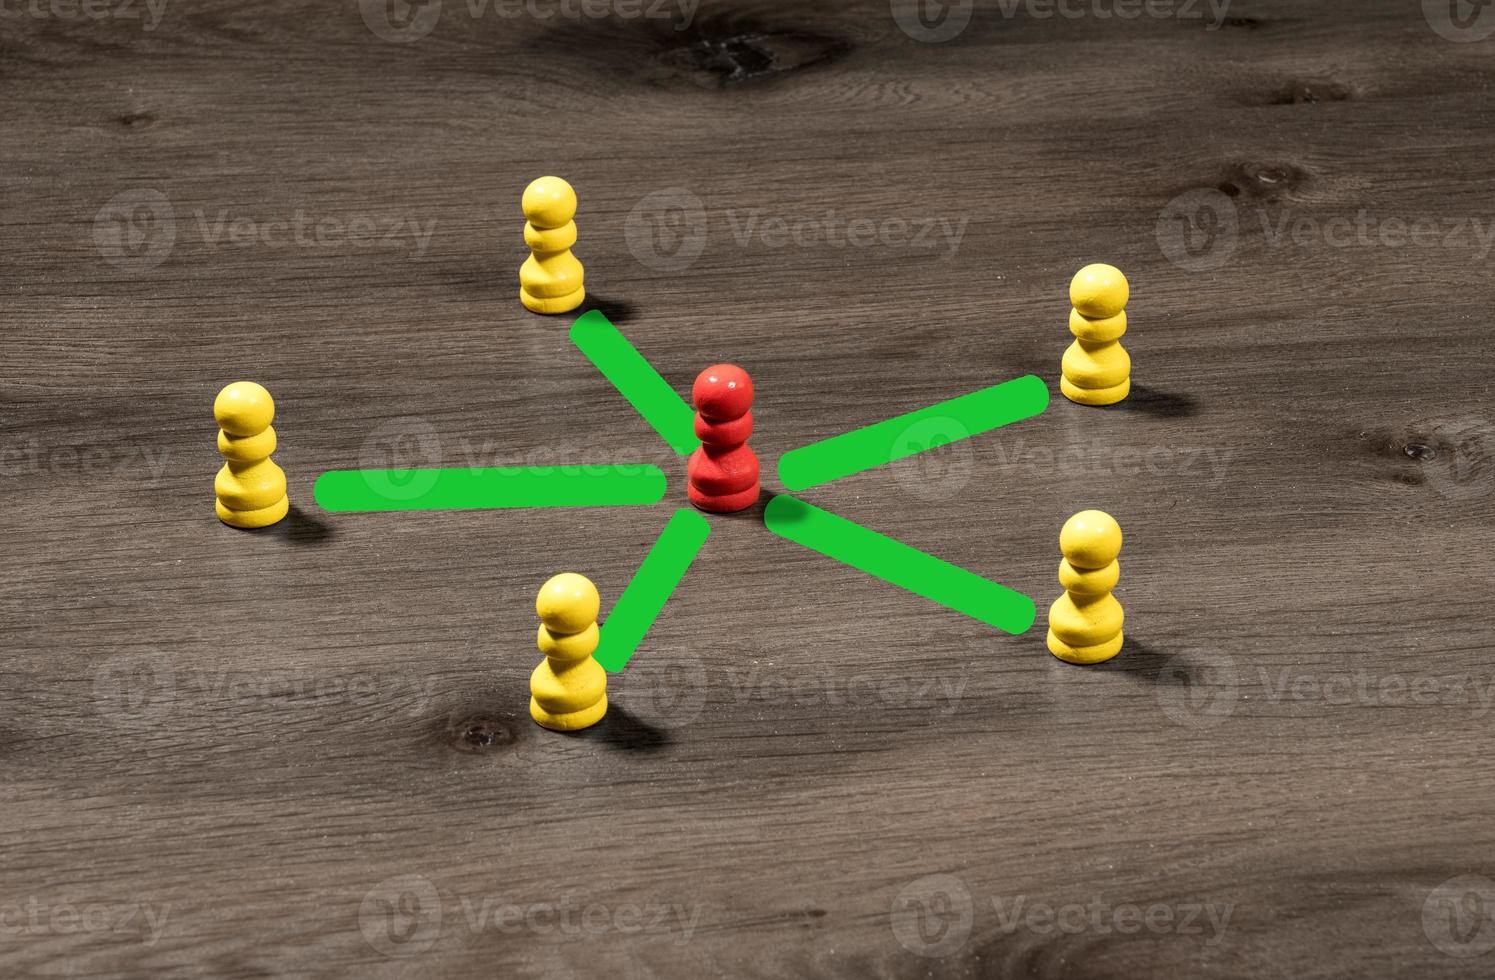 gula träpinnar som omger den röda för att illustrera ledarskap eller kommunikation i sociala medier foto